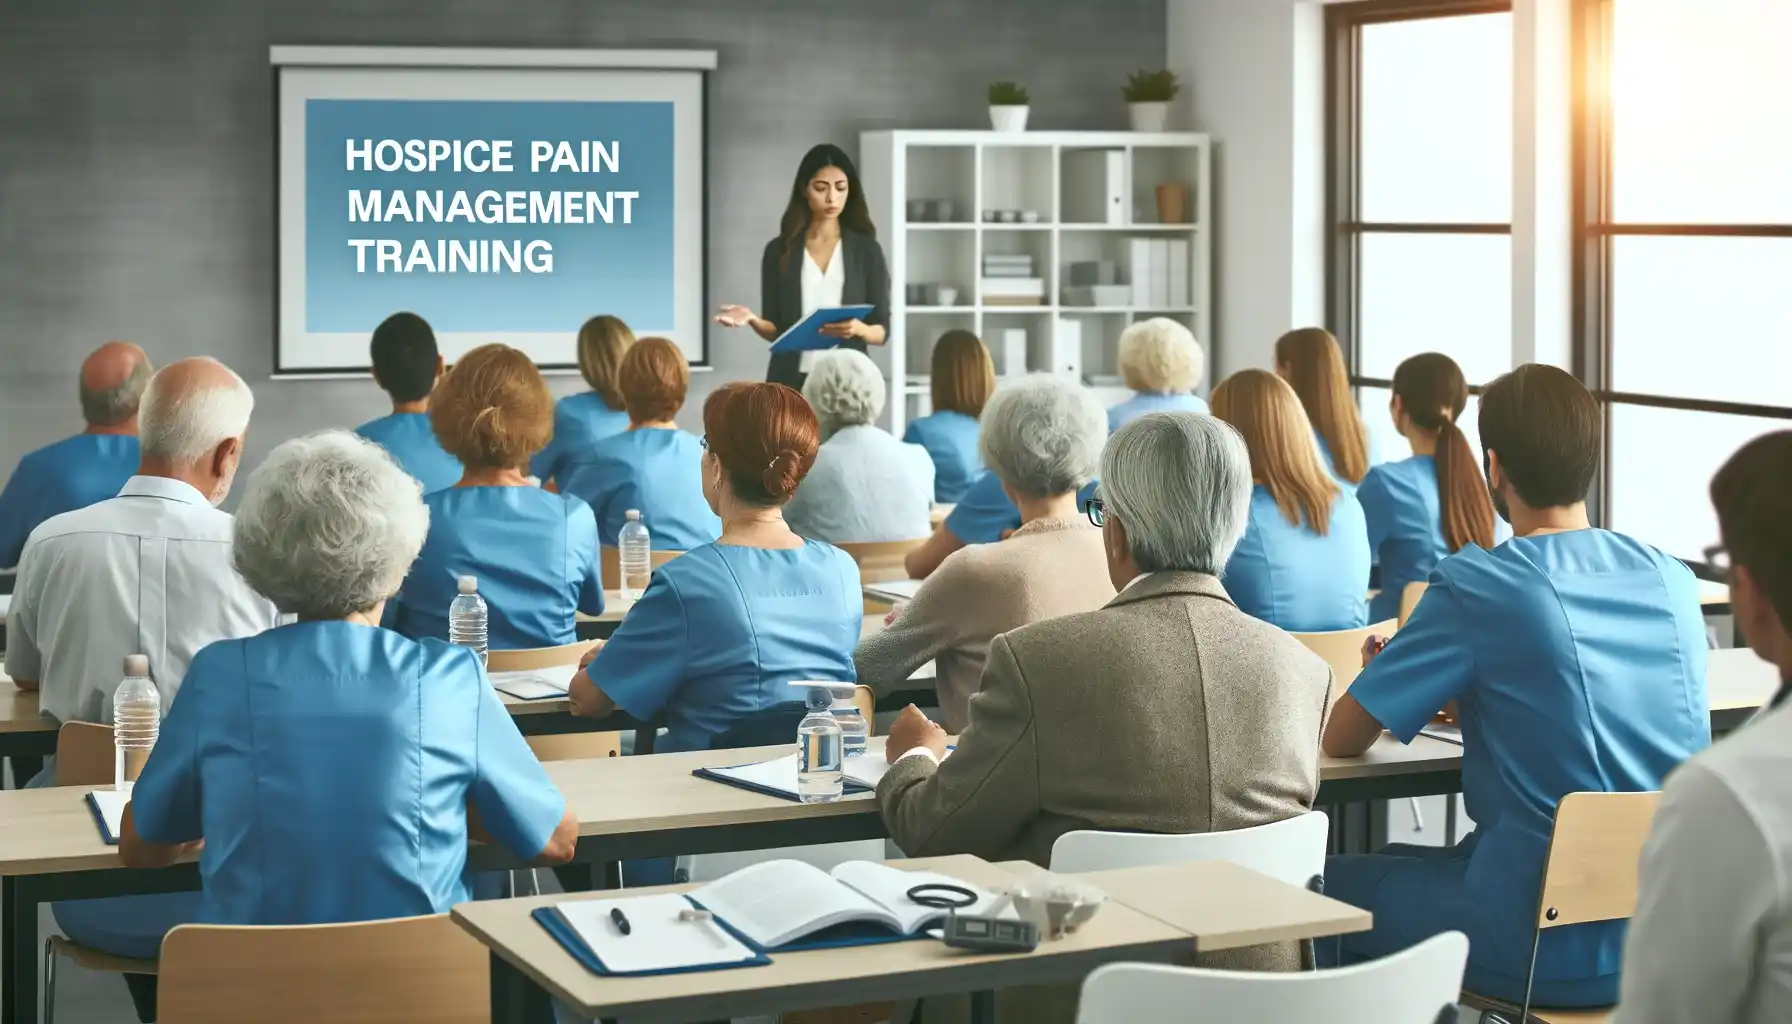 Hospice Interdisciplinary Pain Management Training scenarios
